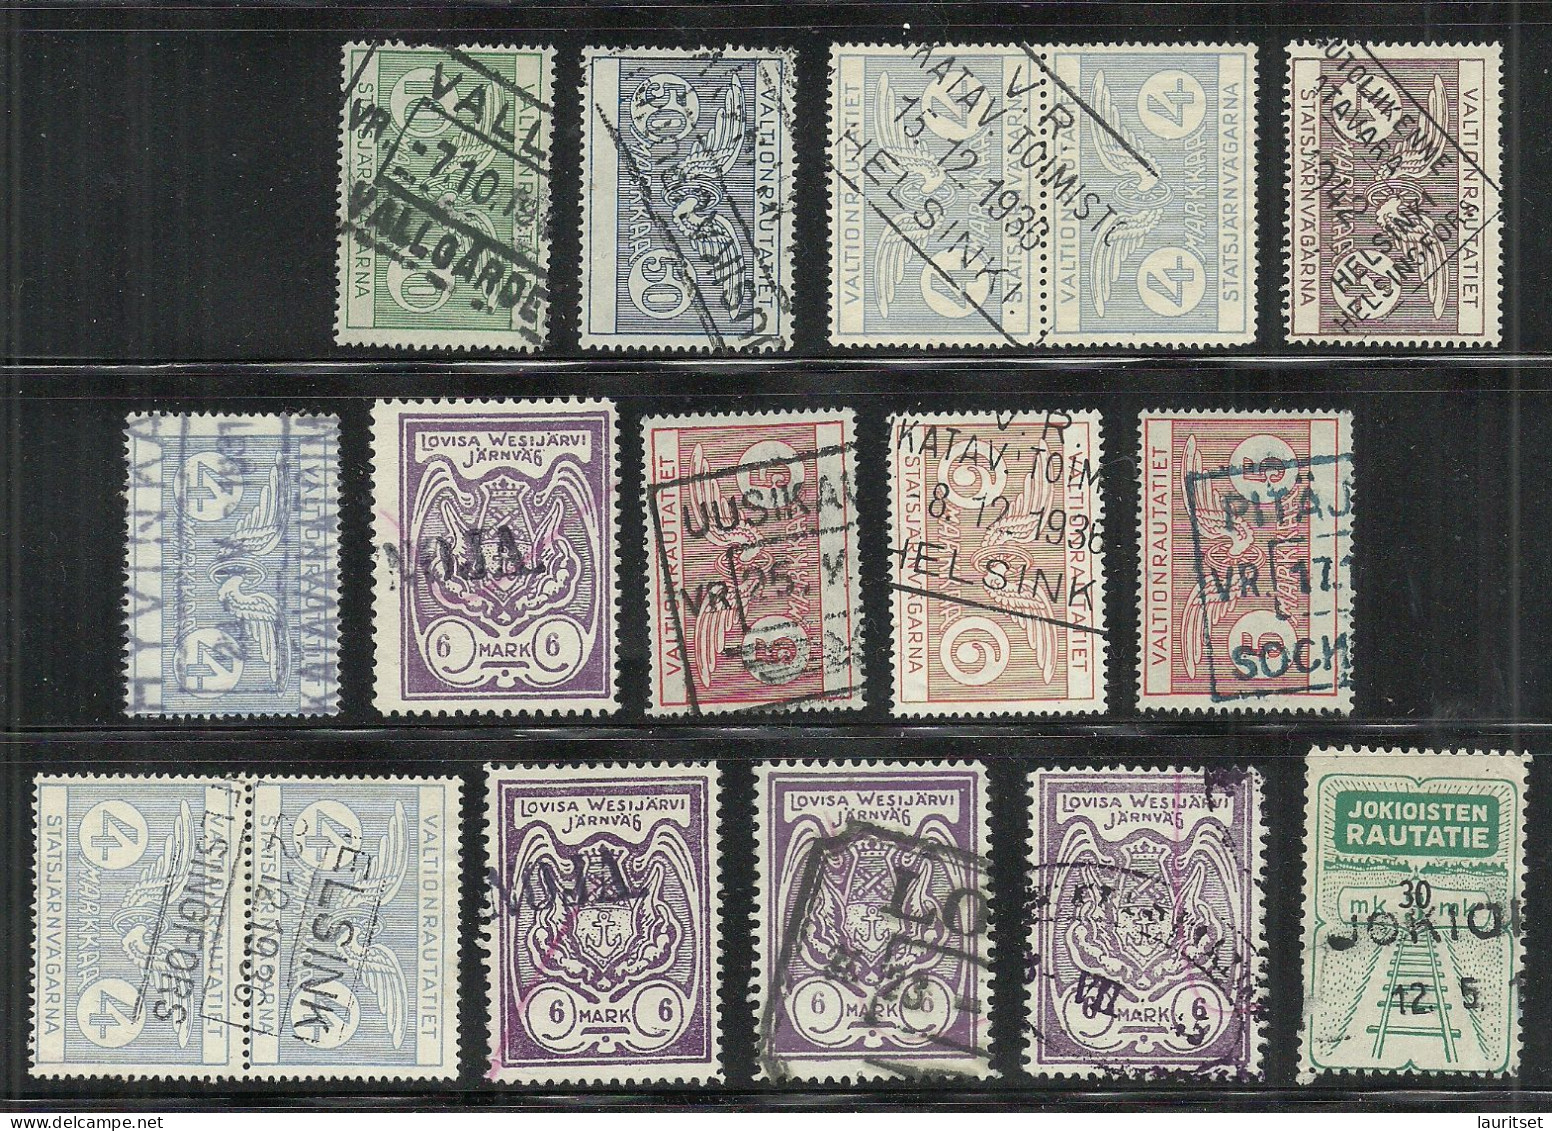 FINLAND FINNLAND 1920ies/1930ies Small Lot Of Railway Packet Stamps Eisenbahn Paketmarken O - Parcel Post